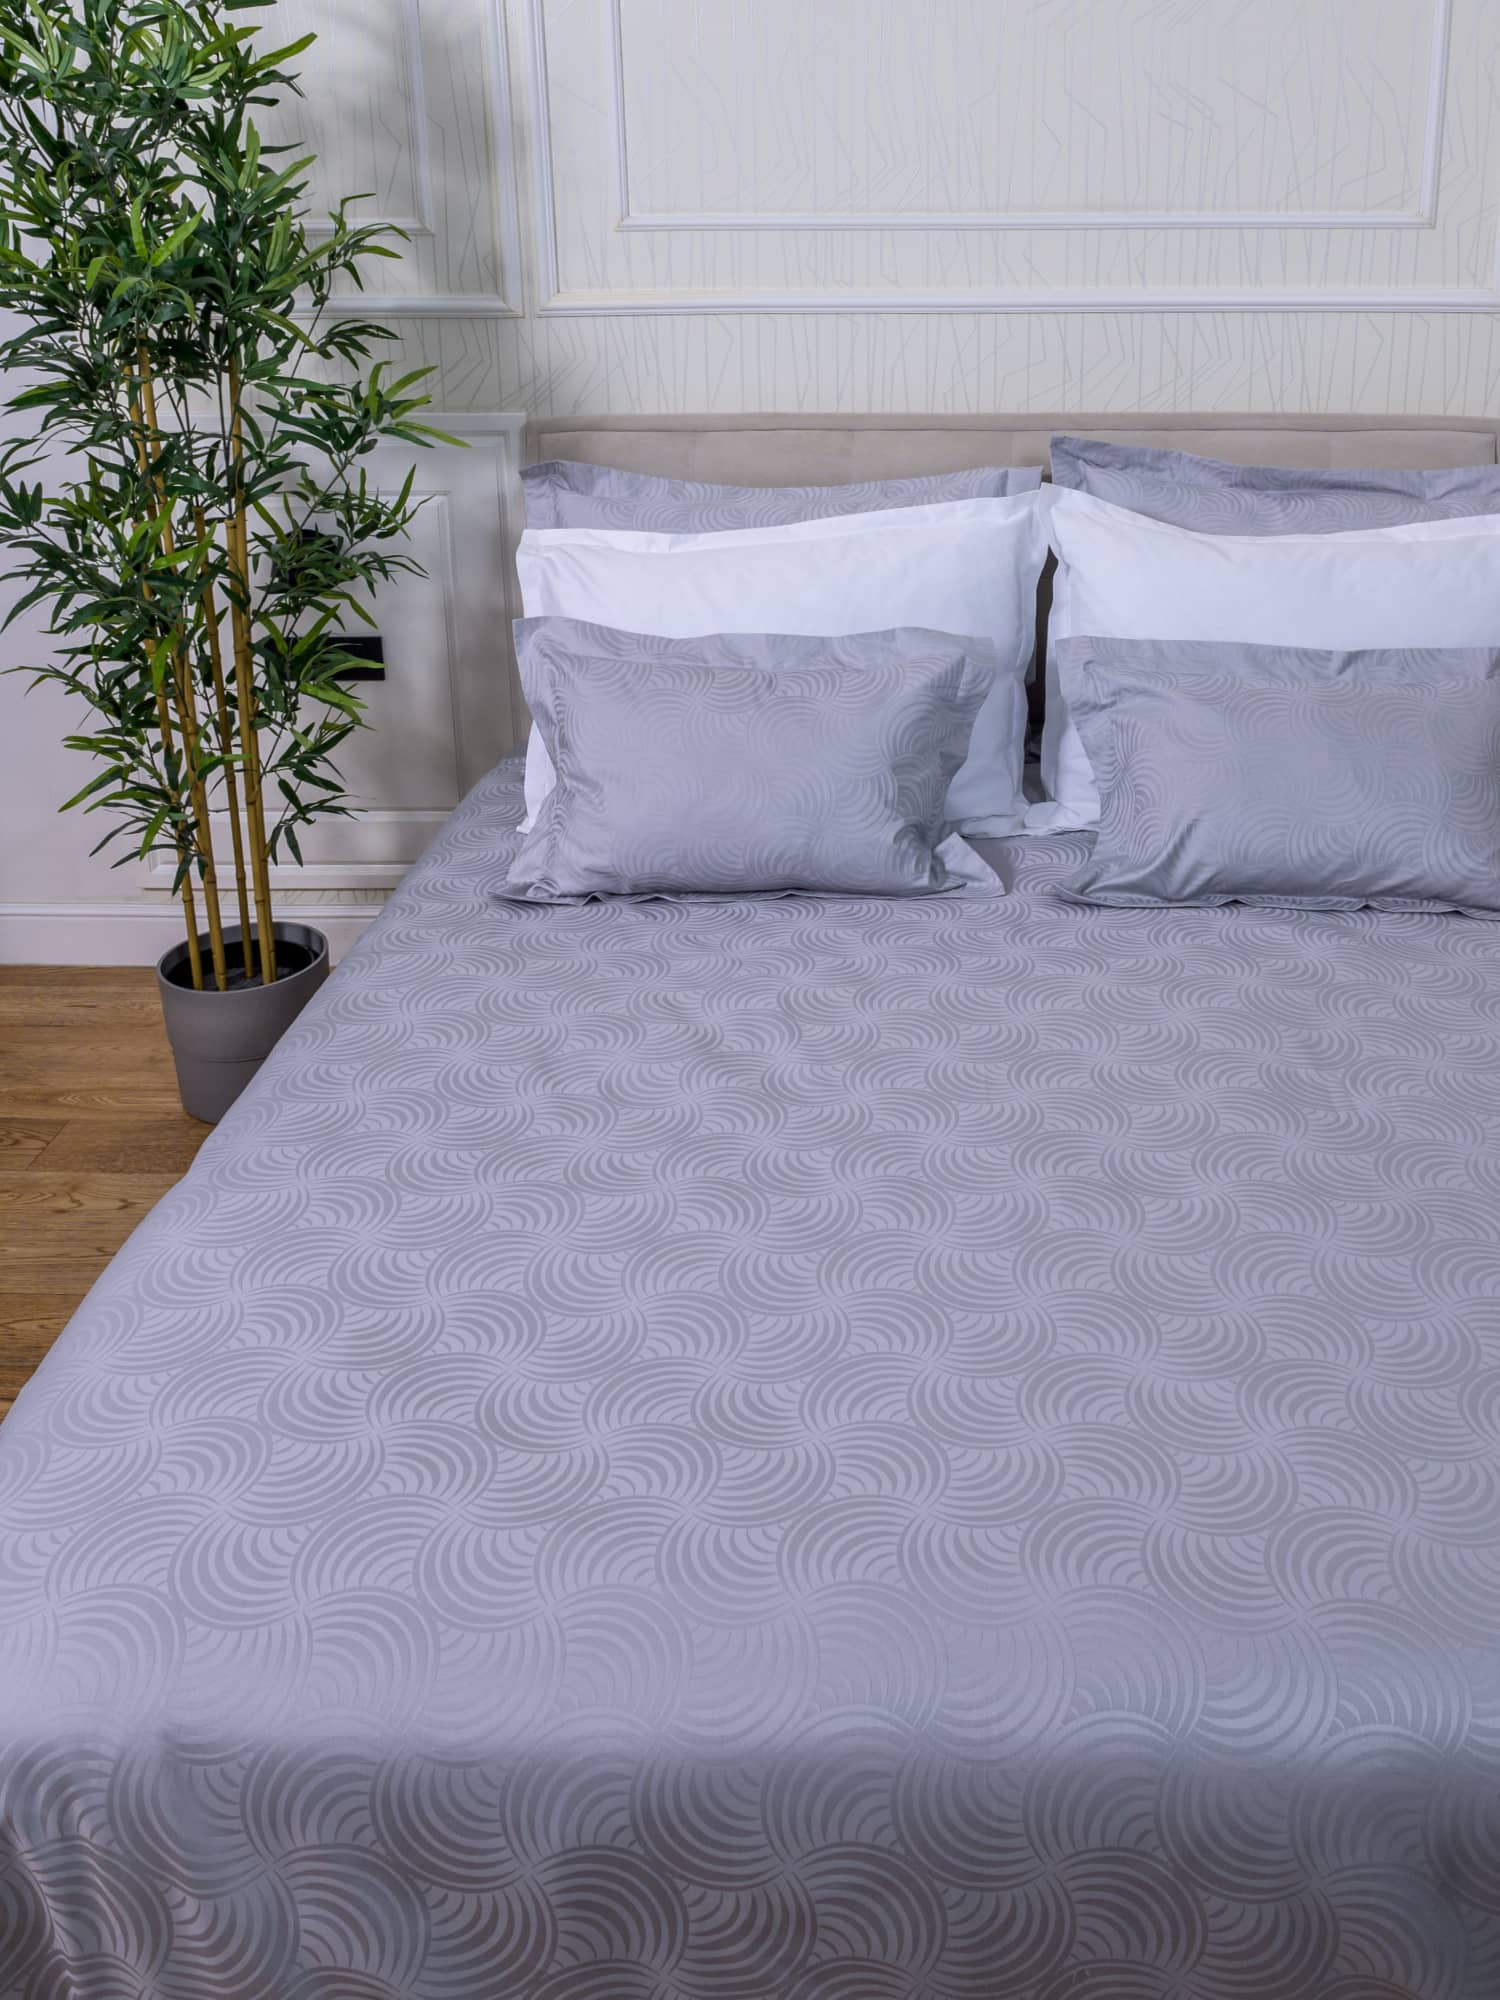 posteljina siva srebrna plahta navlaka jastučnica damast 100 posto pamuk 180x200